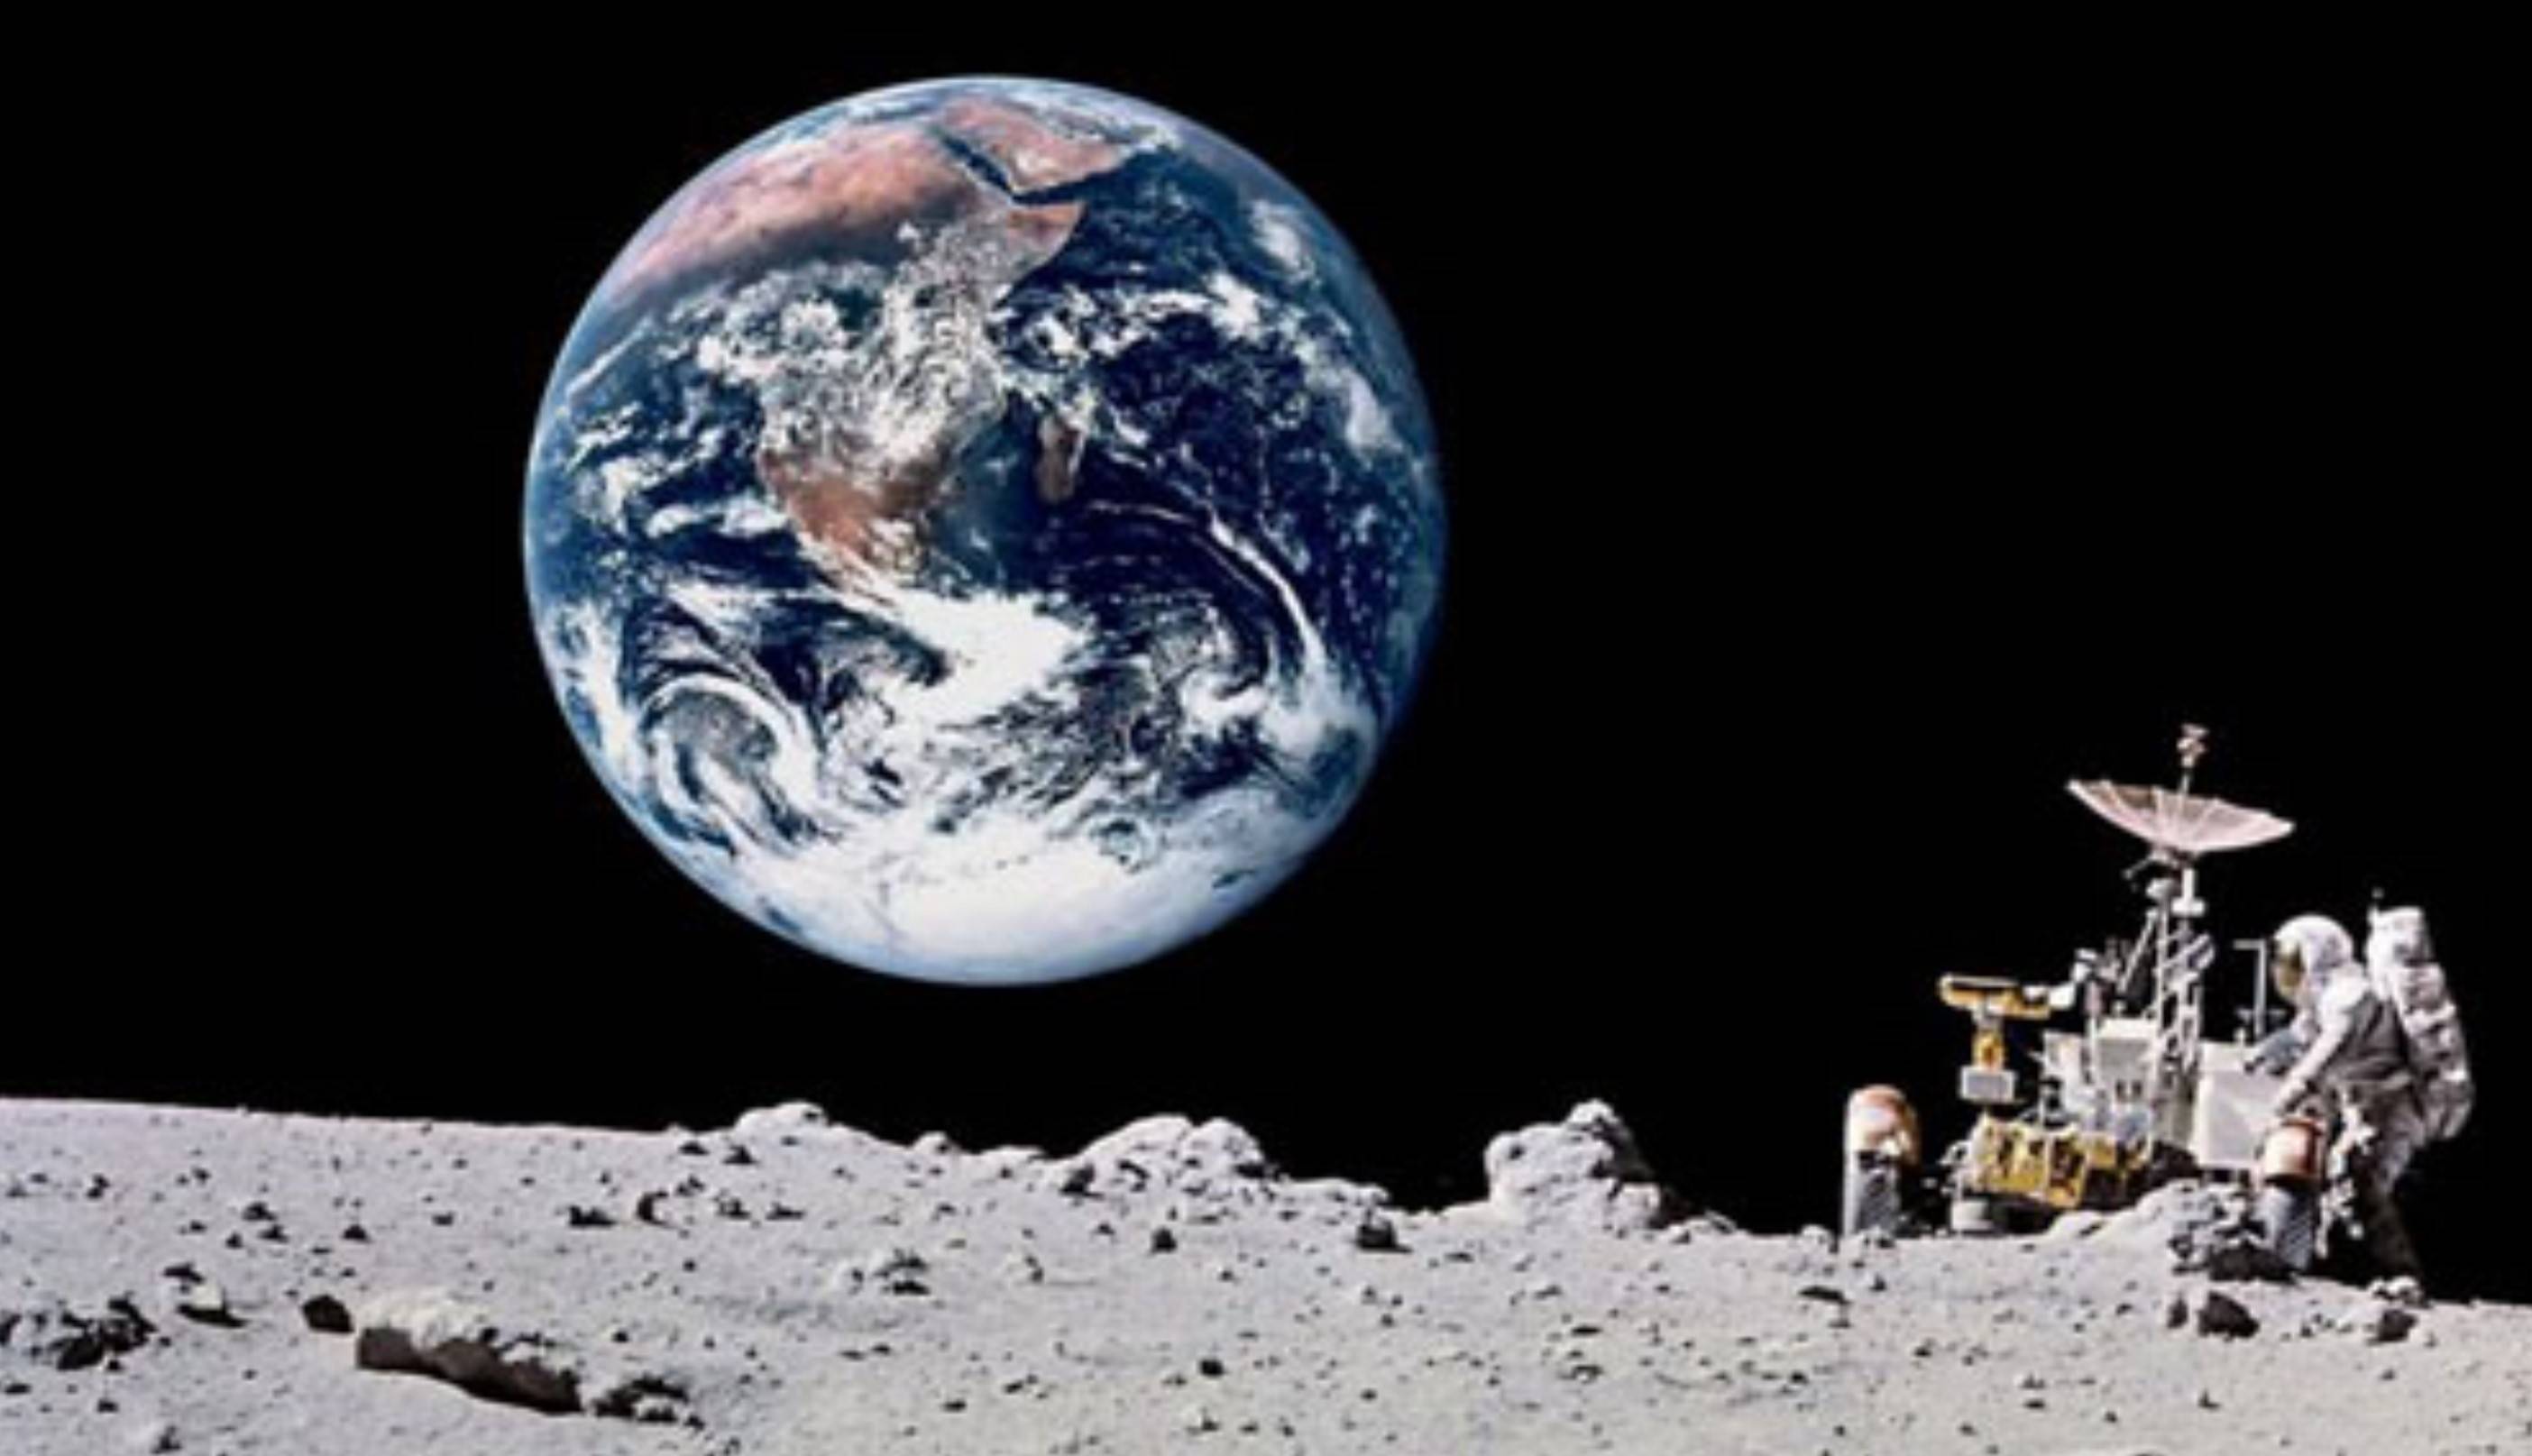 地球视面积比月亮大多了,因此月亮同样大的东西在地球上比例就更小.